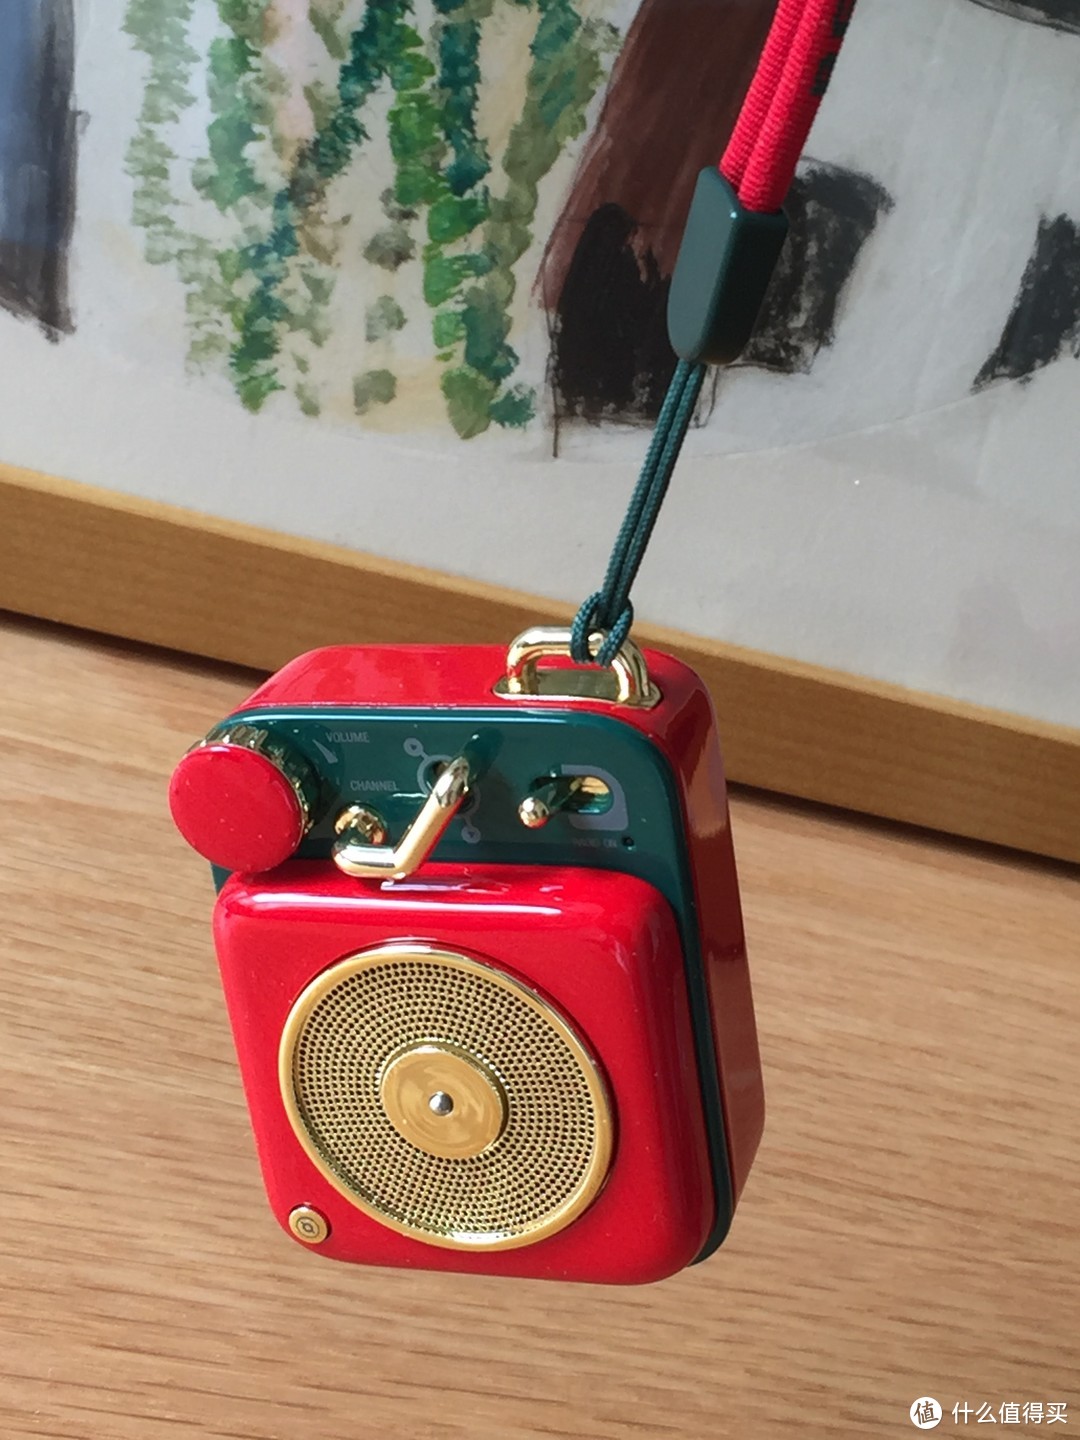 圣诞小确幸，大妈给的爱----猫王原子唱机B612便携式蓝牙音箱使用体会